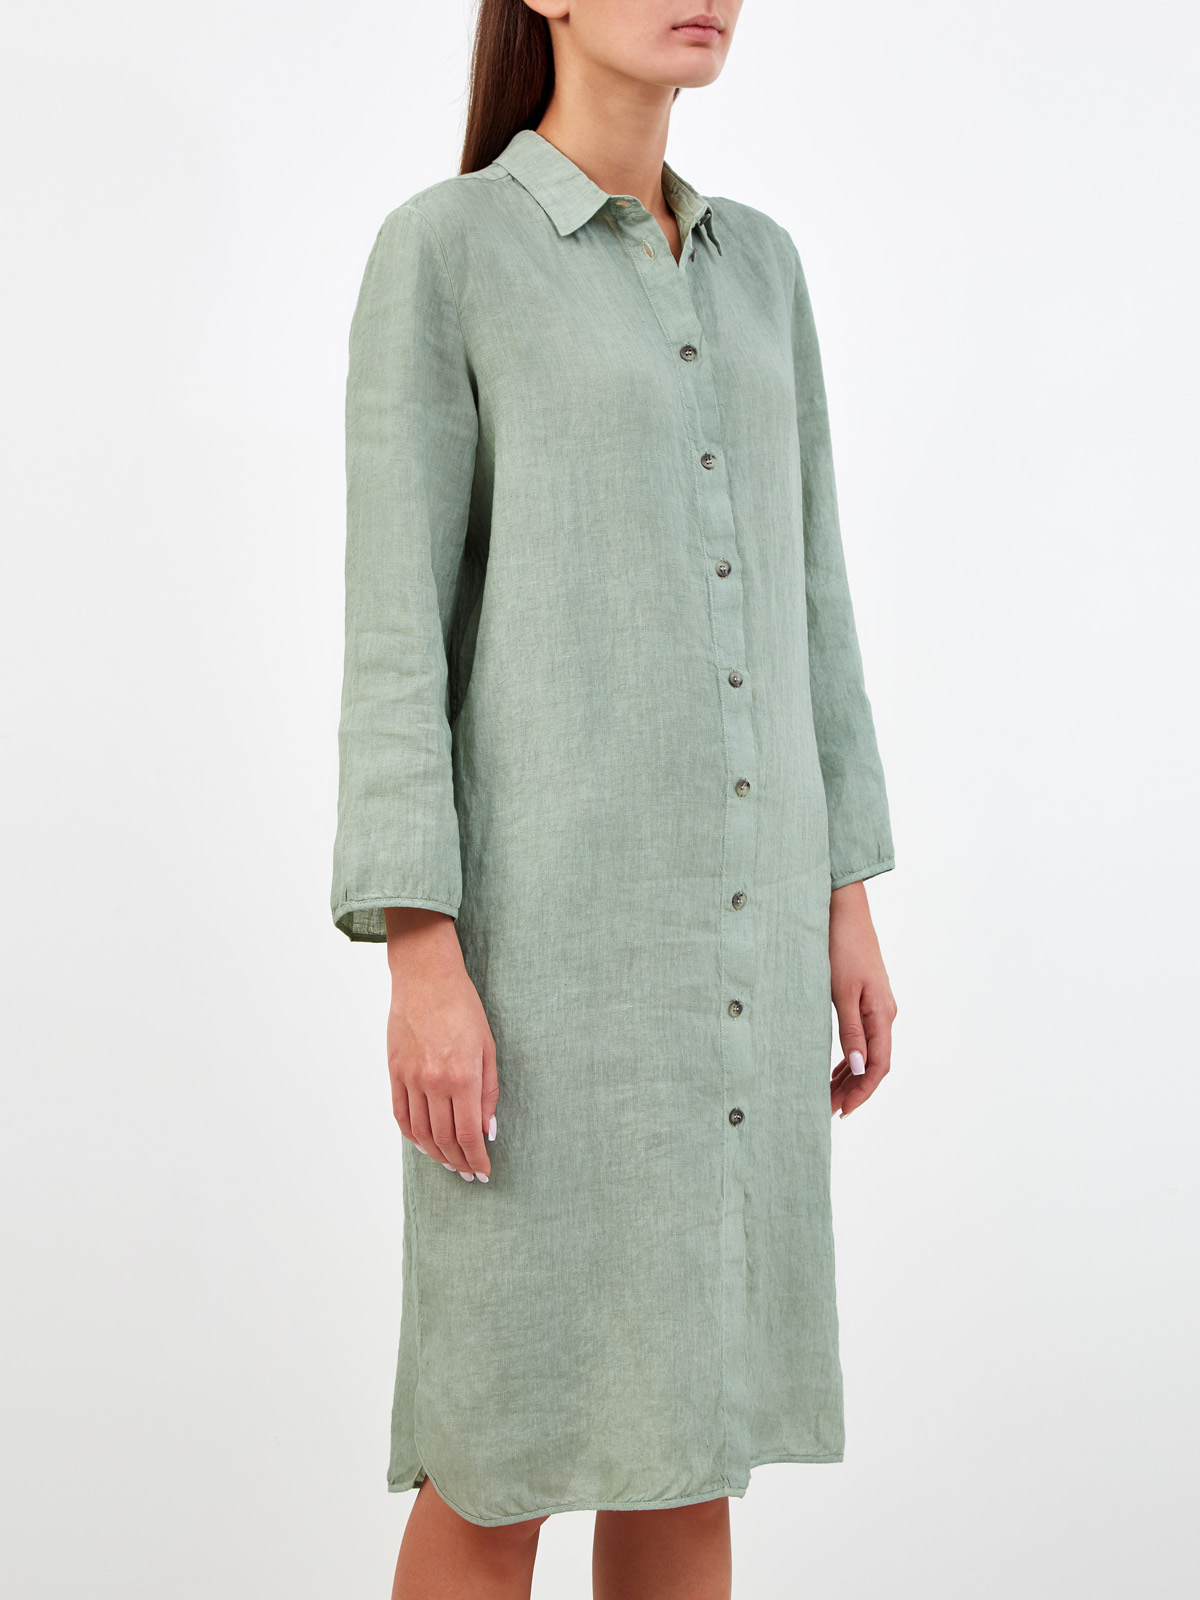 Платье-рубашка из дышащей льняной ткани GRAN SASSO, цвет зеленый, размер 40;42;44;48 - фото 3